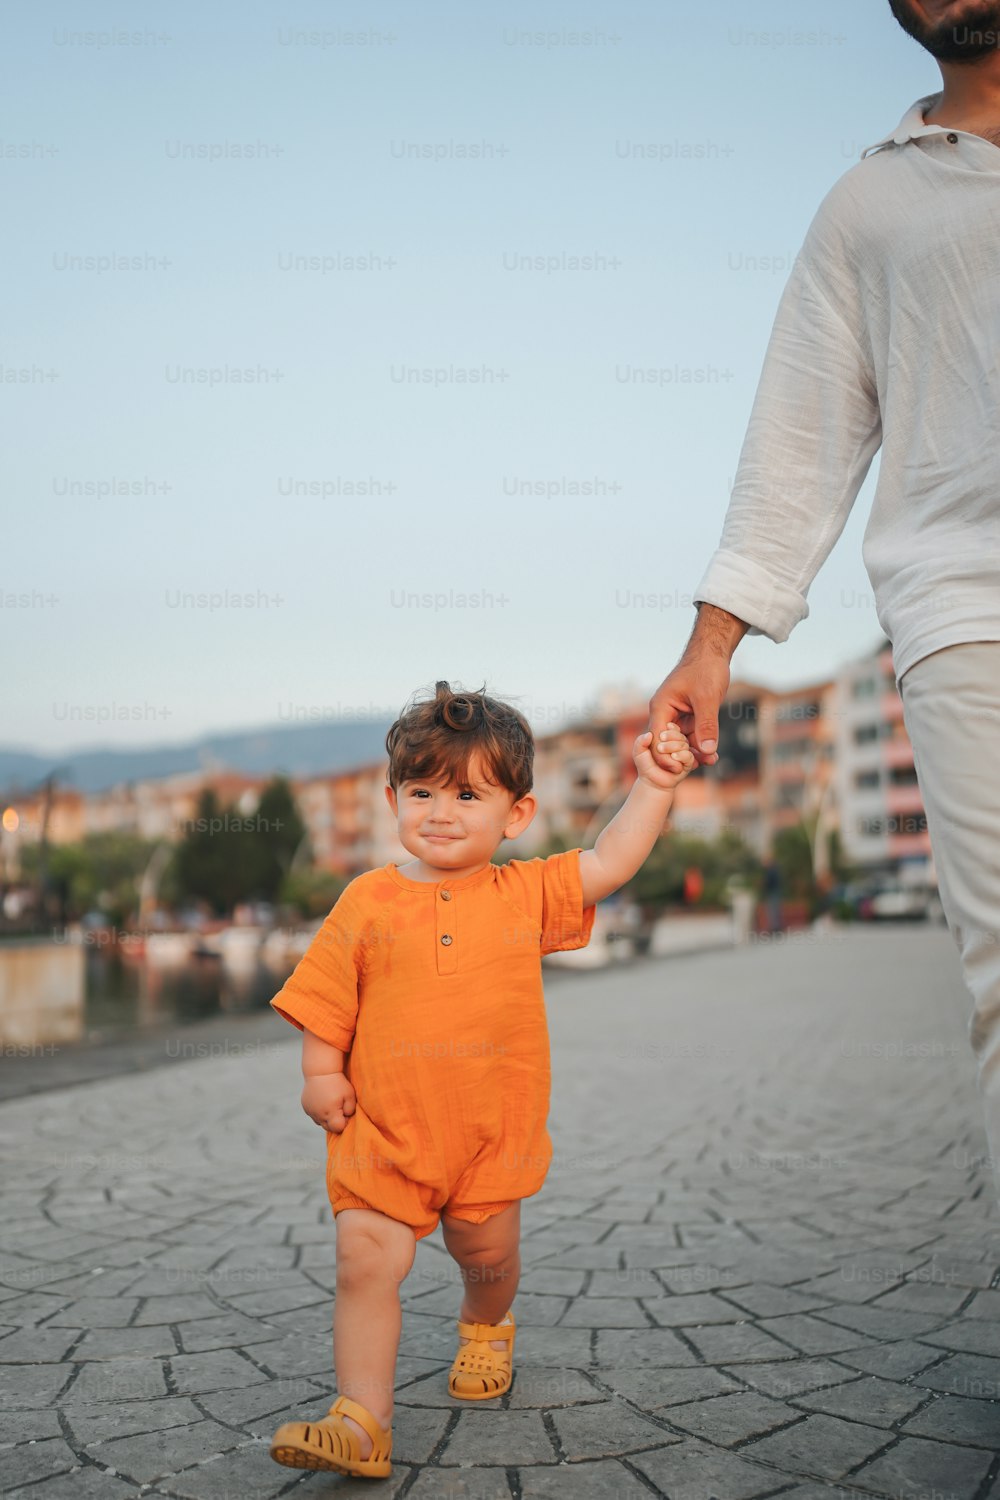 어린아이의 손을 잡고 있는 남자